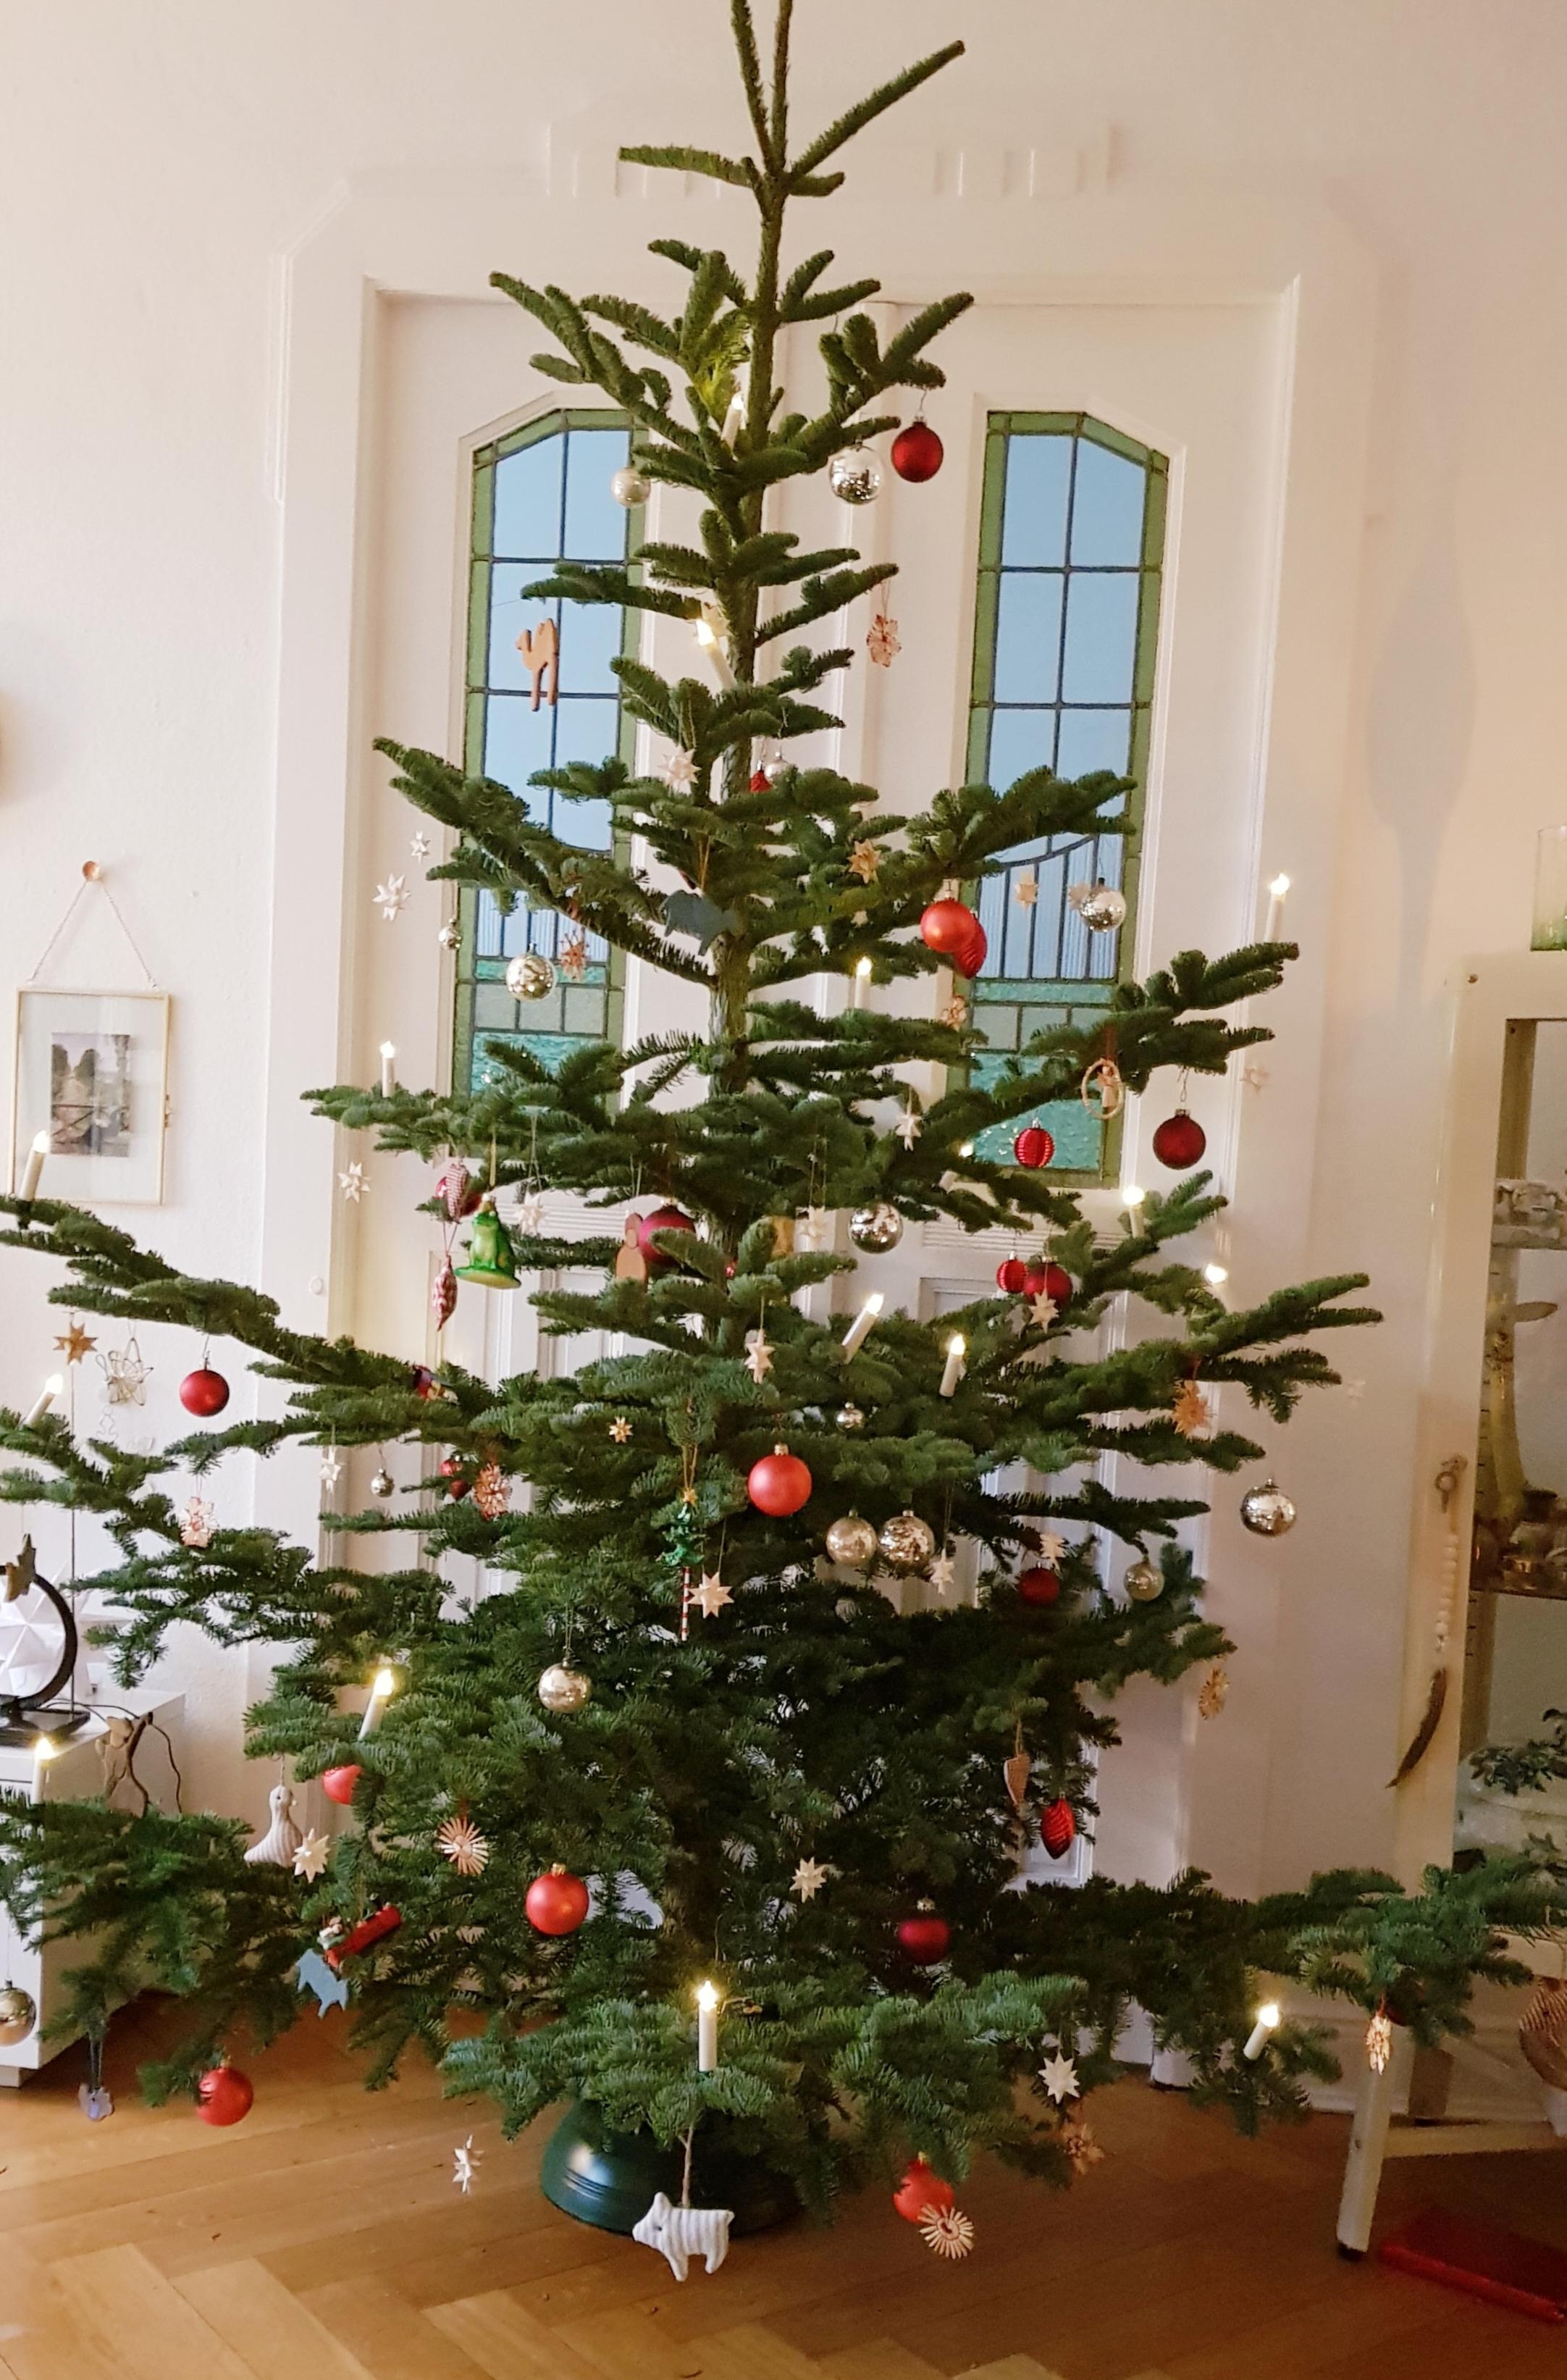 Es weihnachtet sehr 🎄 #weihnachten #weihnachtsdeko #weihnachtsbaum #wohnzimmer #altbau 